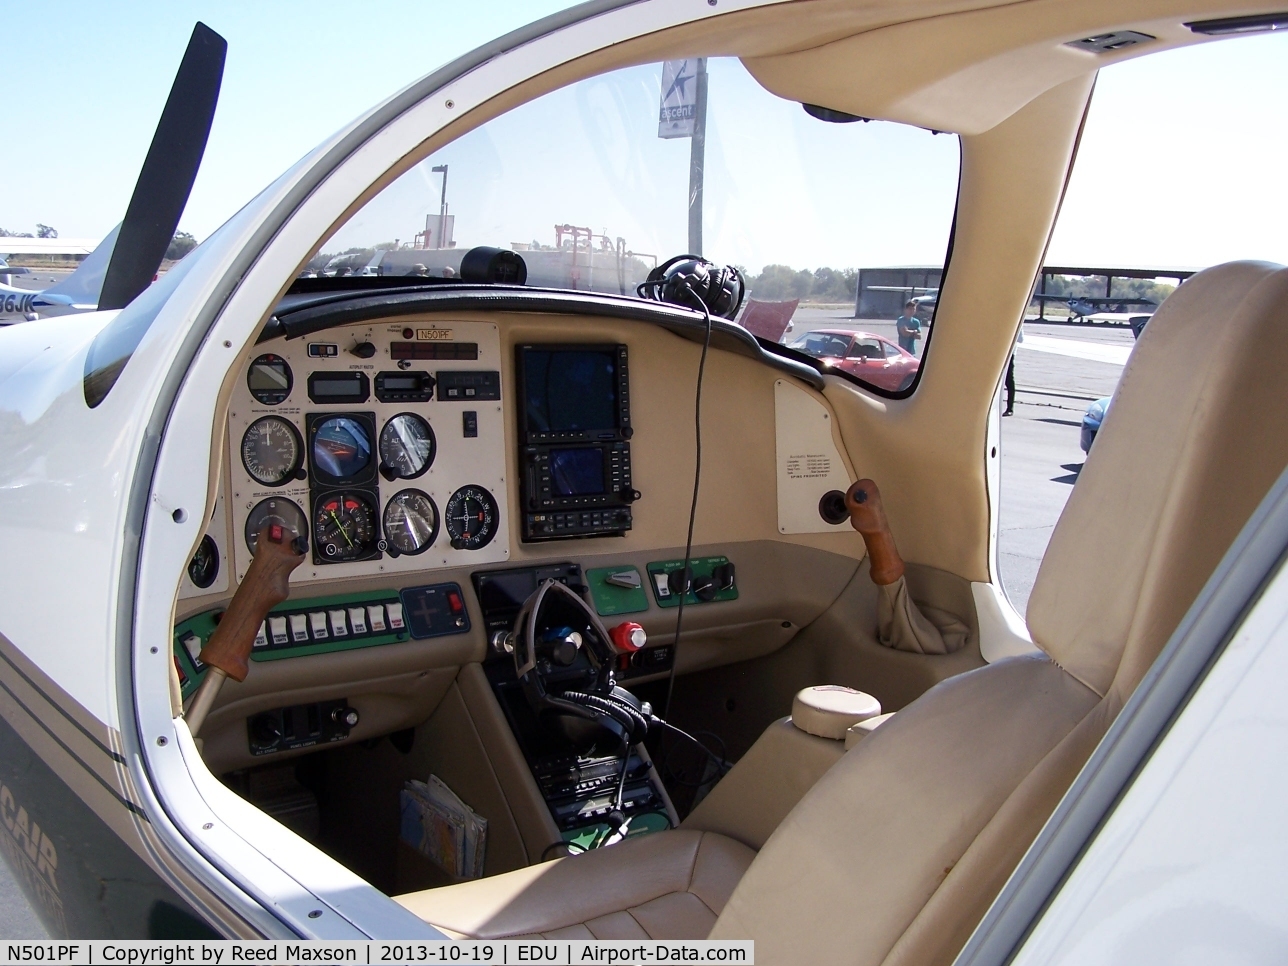 N501PF, 2001 Lancair LC-40-550FG C/N 40021, Lancair cabin